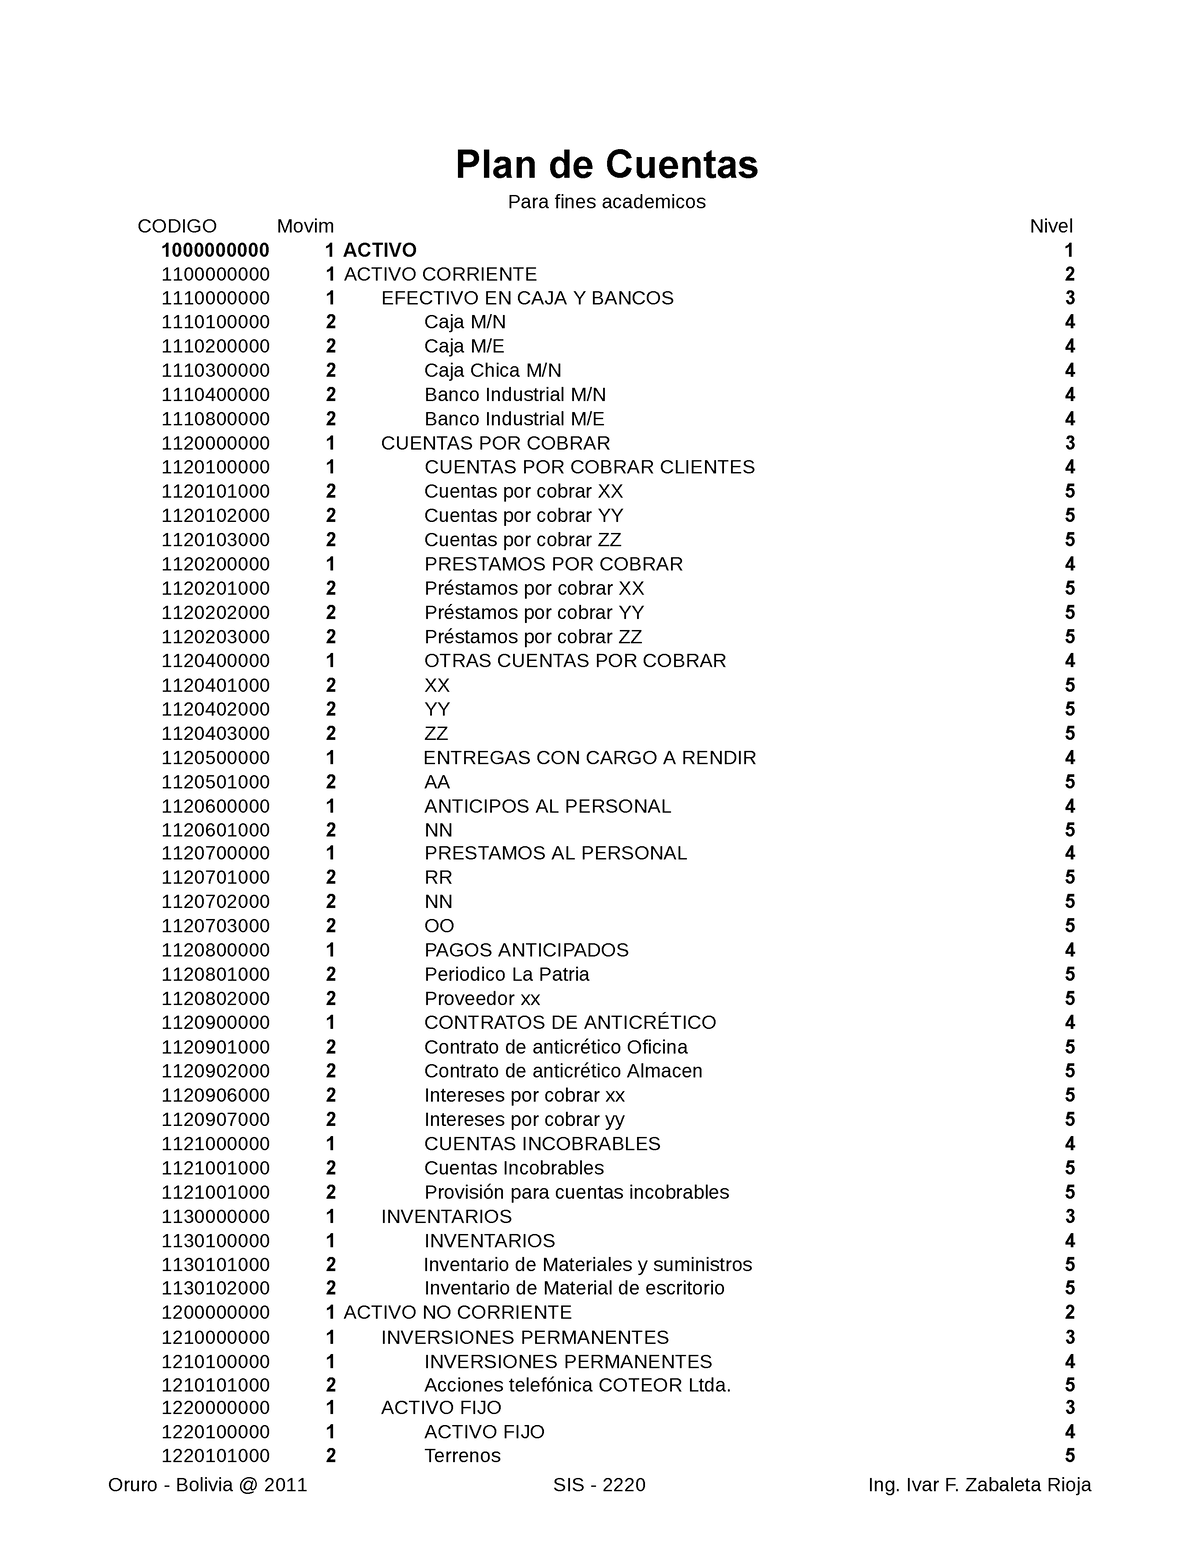 Plan De Cuentas Empresa De Servicios Plan De Cuentas Para Fines Academicos 1000000000 1 Activo 0287